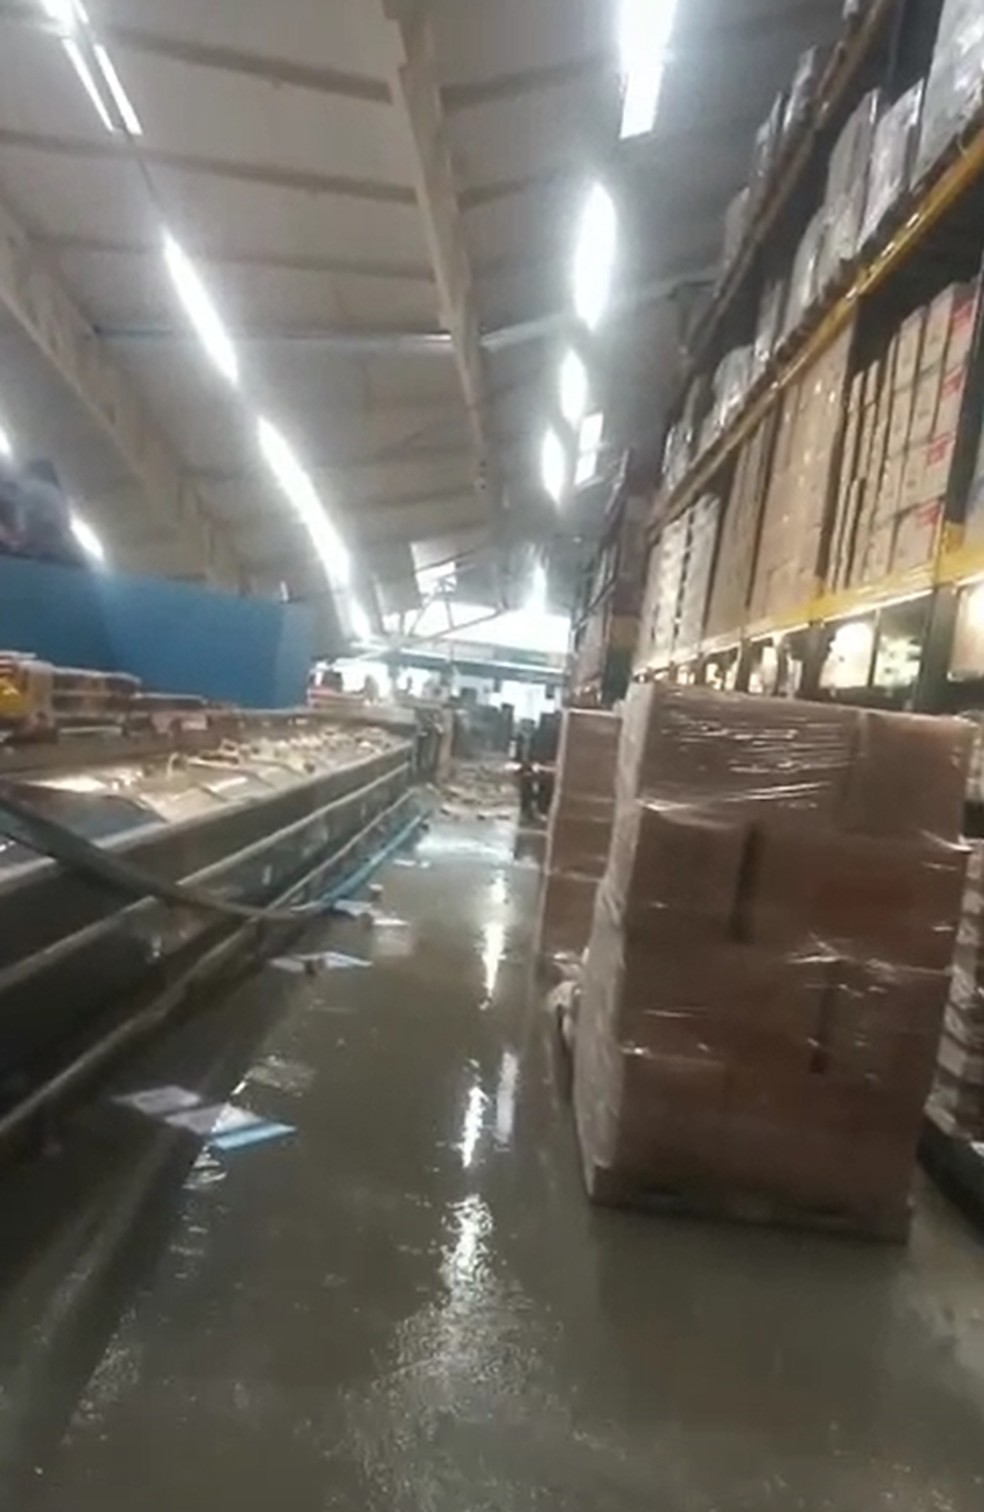 Chuva dentro de supermercado após telhado ser derrubado em Três Corações (MG) — Foto: Redes sociais 